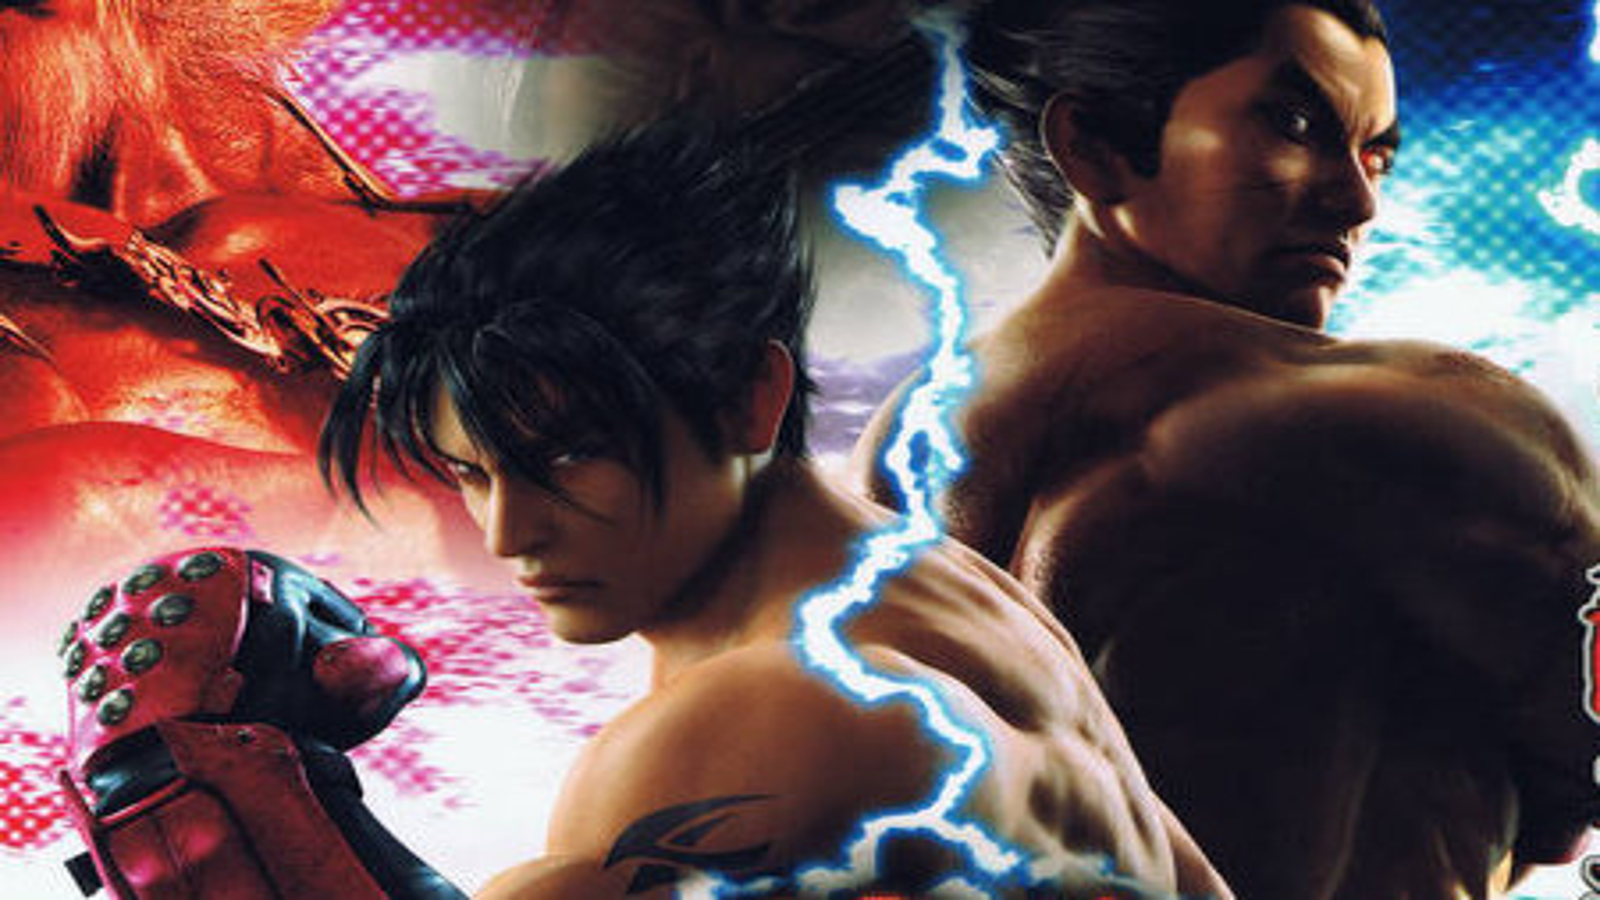 Tekken faz hoje 25 anos